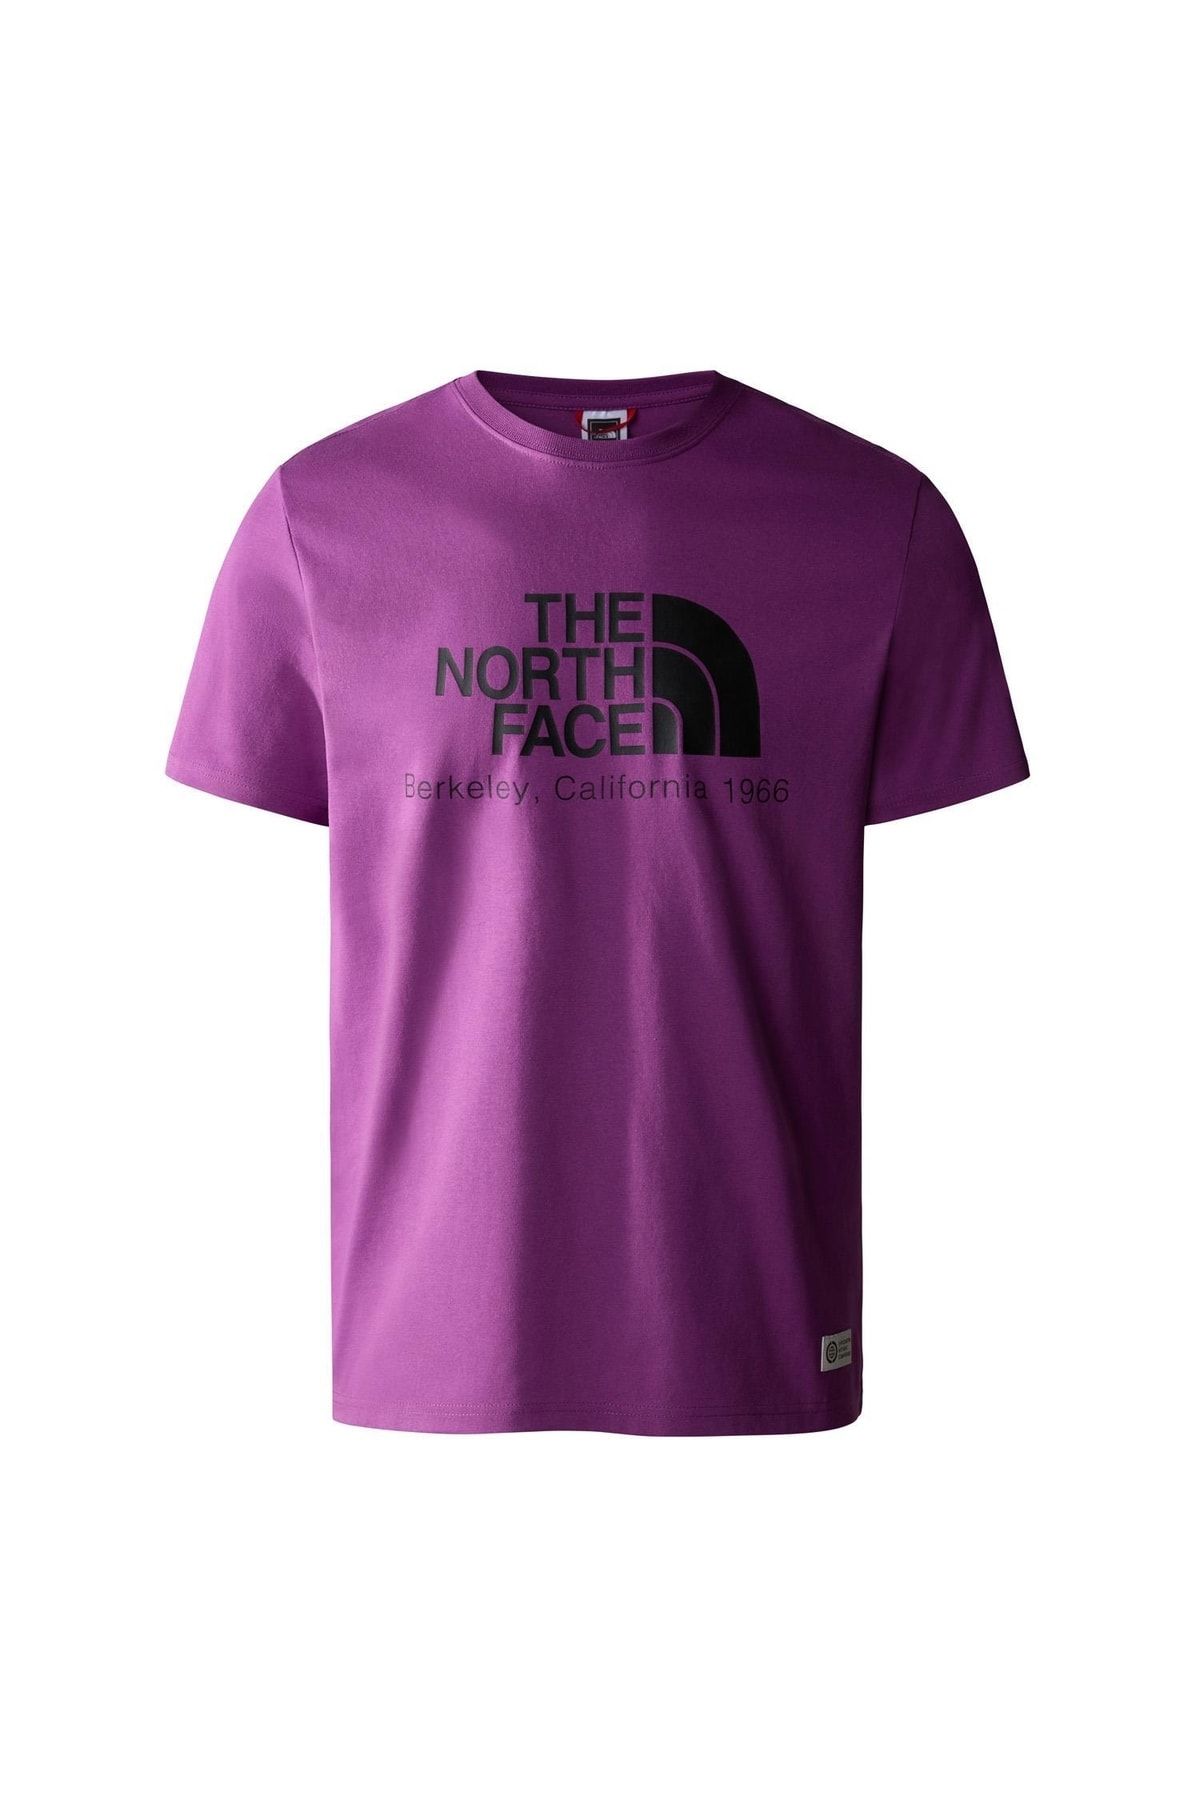 The North Face M Berkeley Calıfornıa Tee- In Scrap Mat Erkek T-shirt Nf0a55gelv11